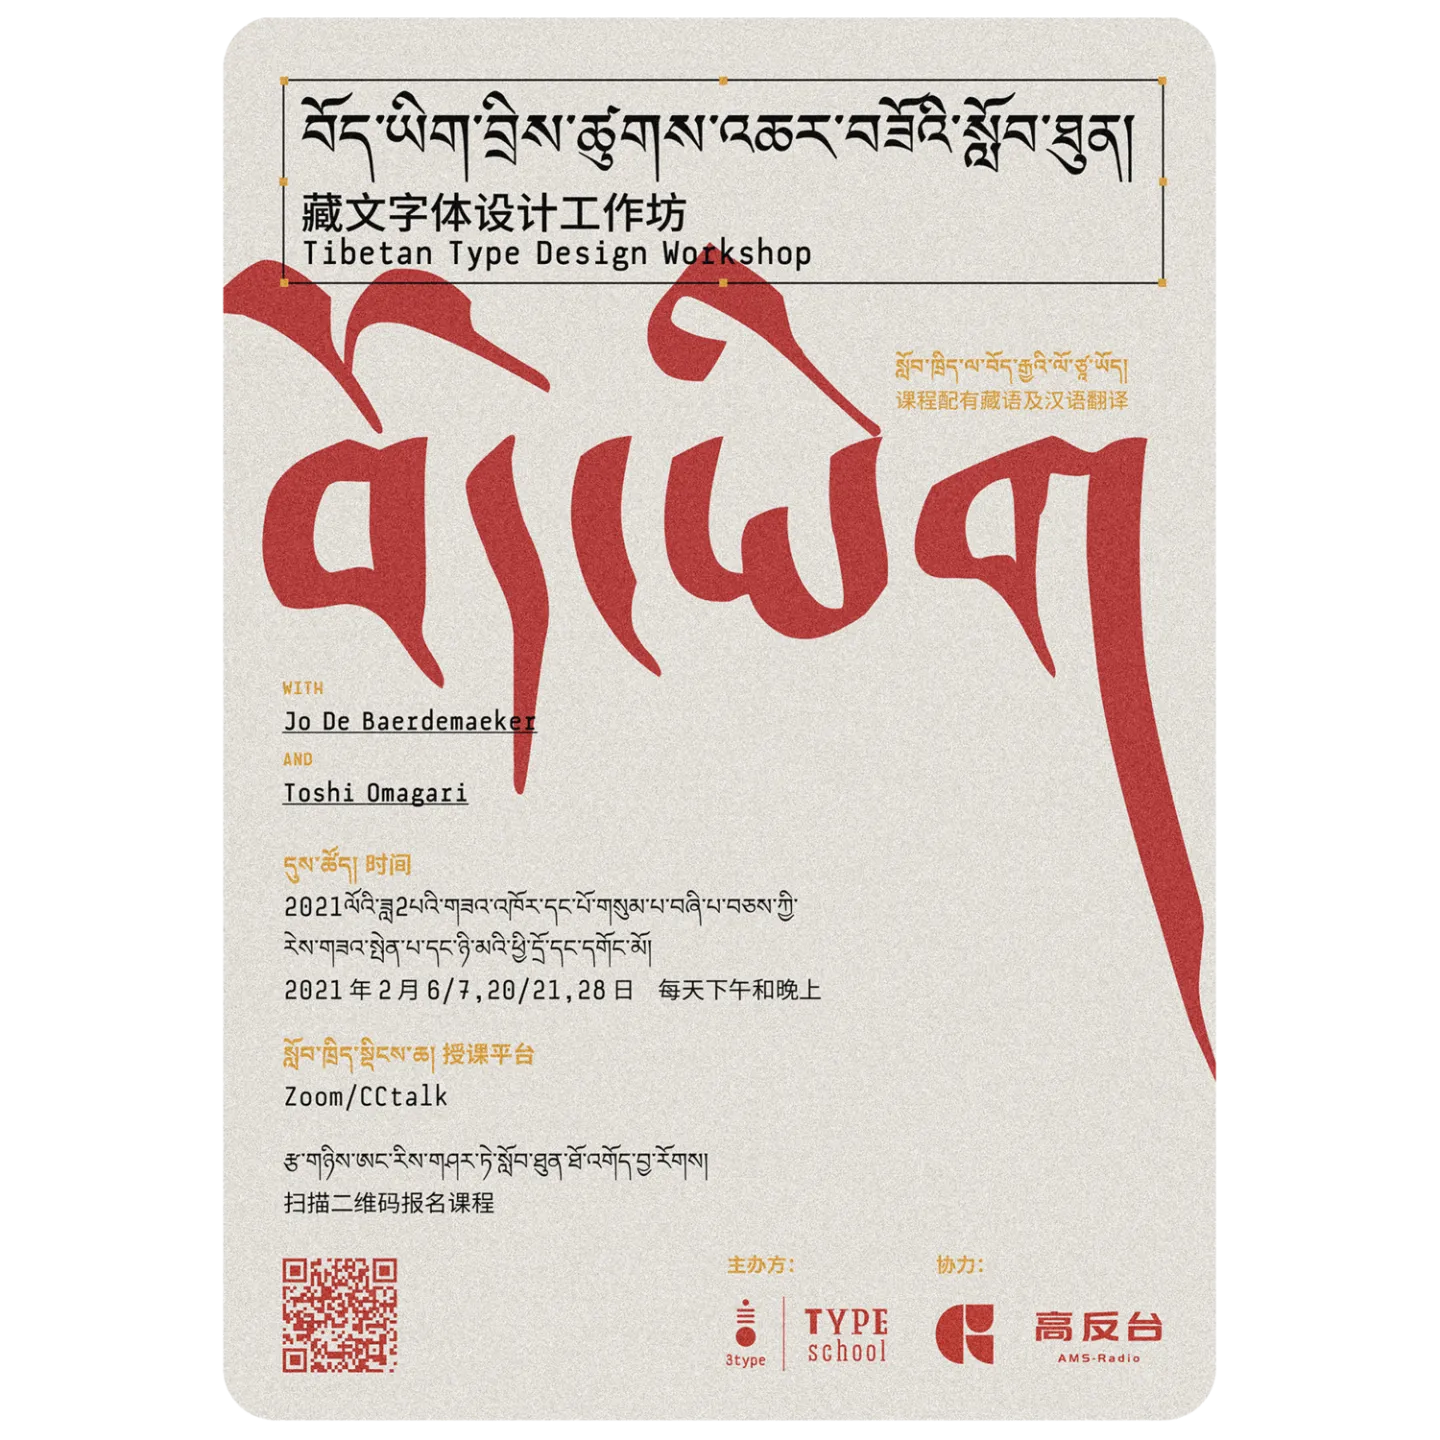 workshop: Tibetan TypeSchool - Type Design Workshop